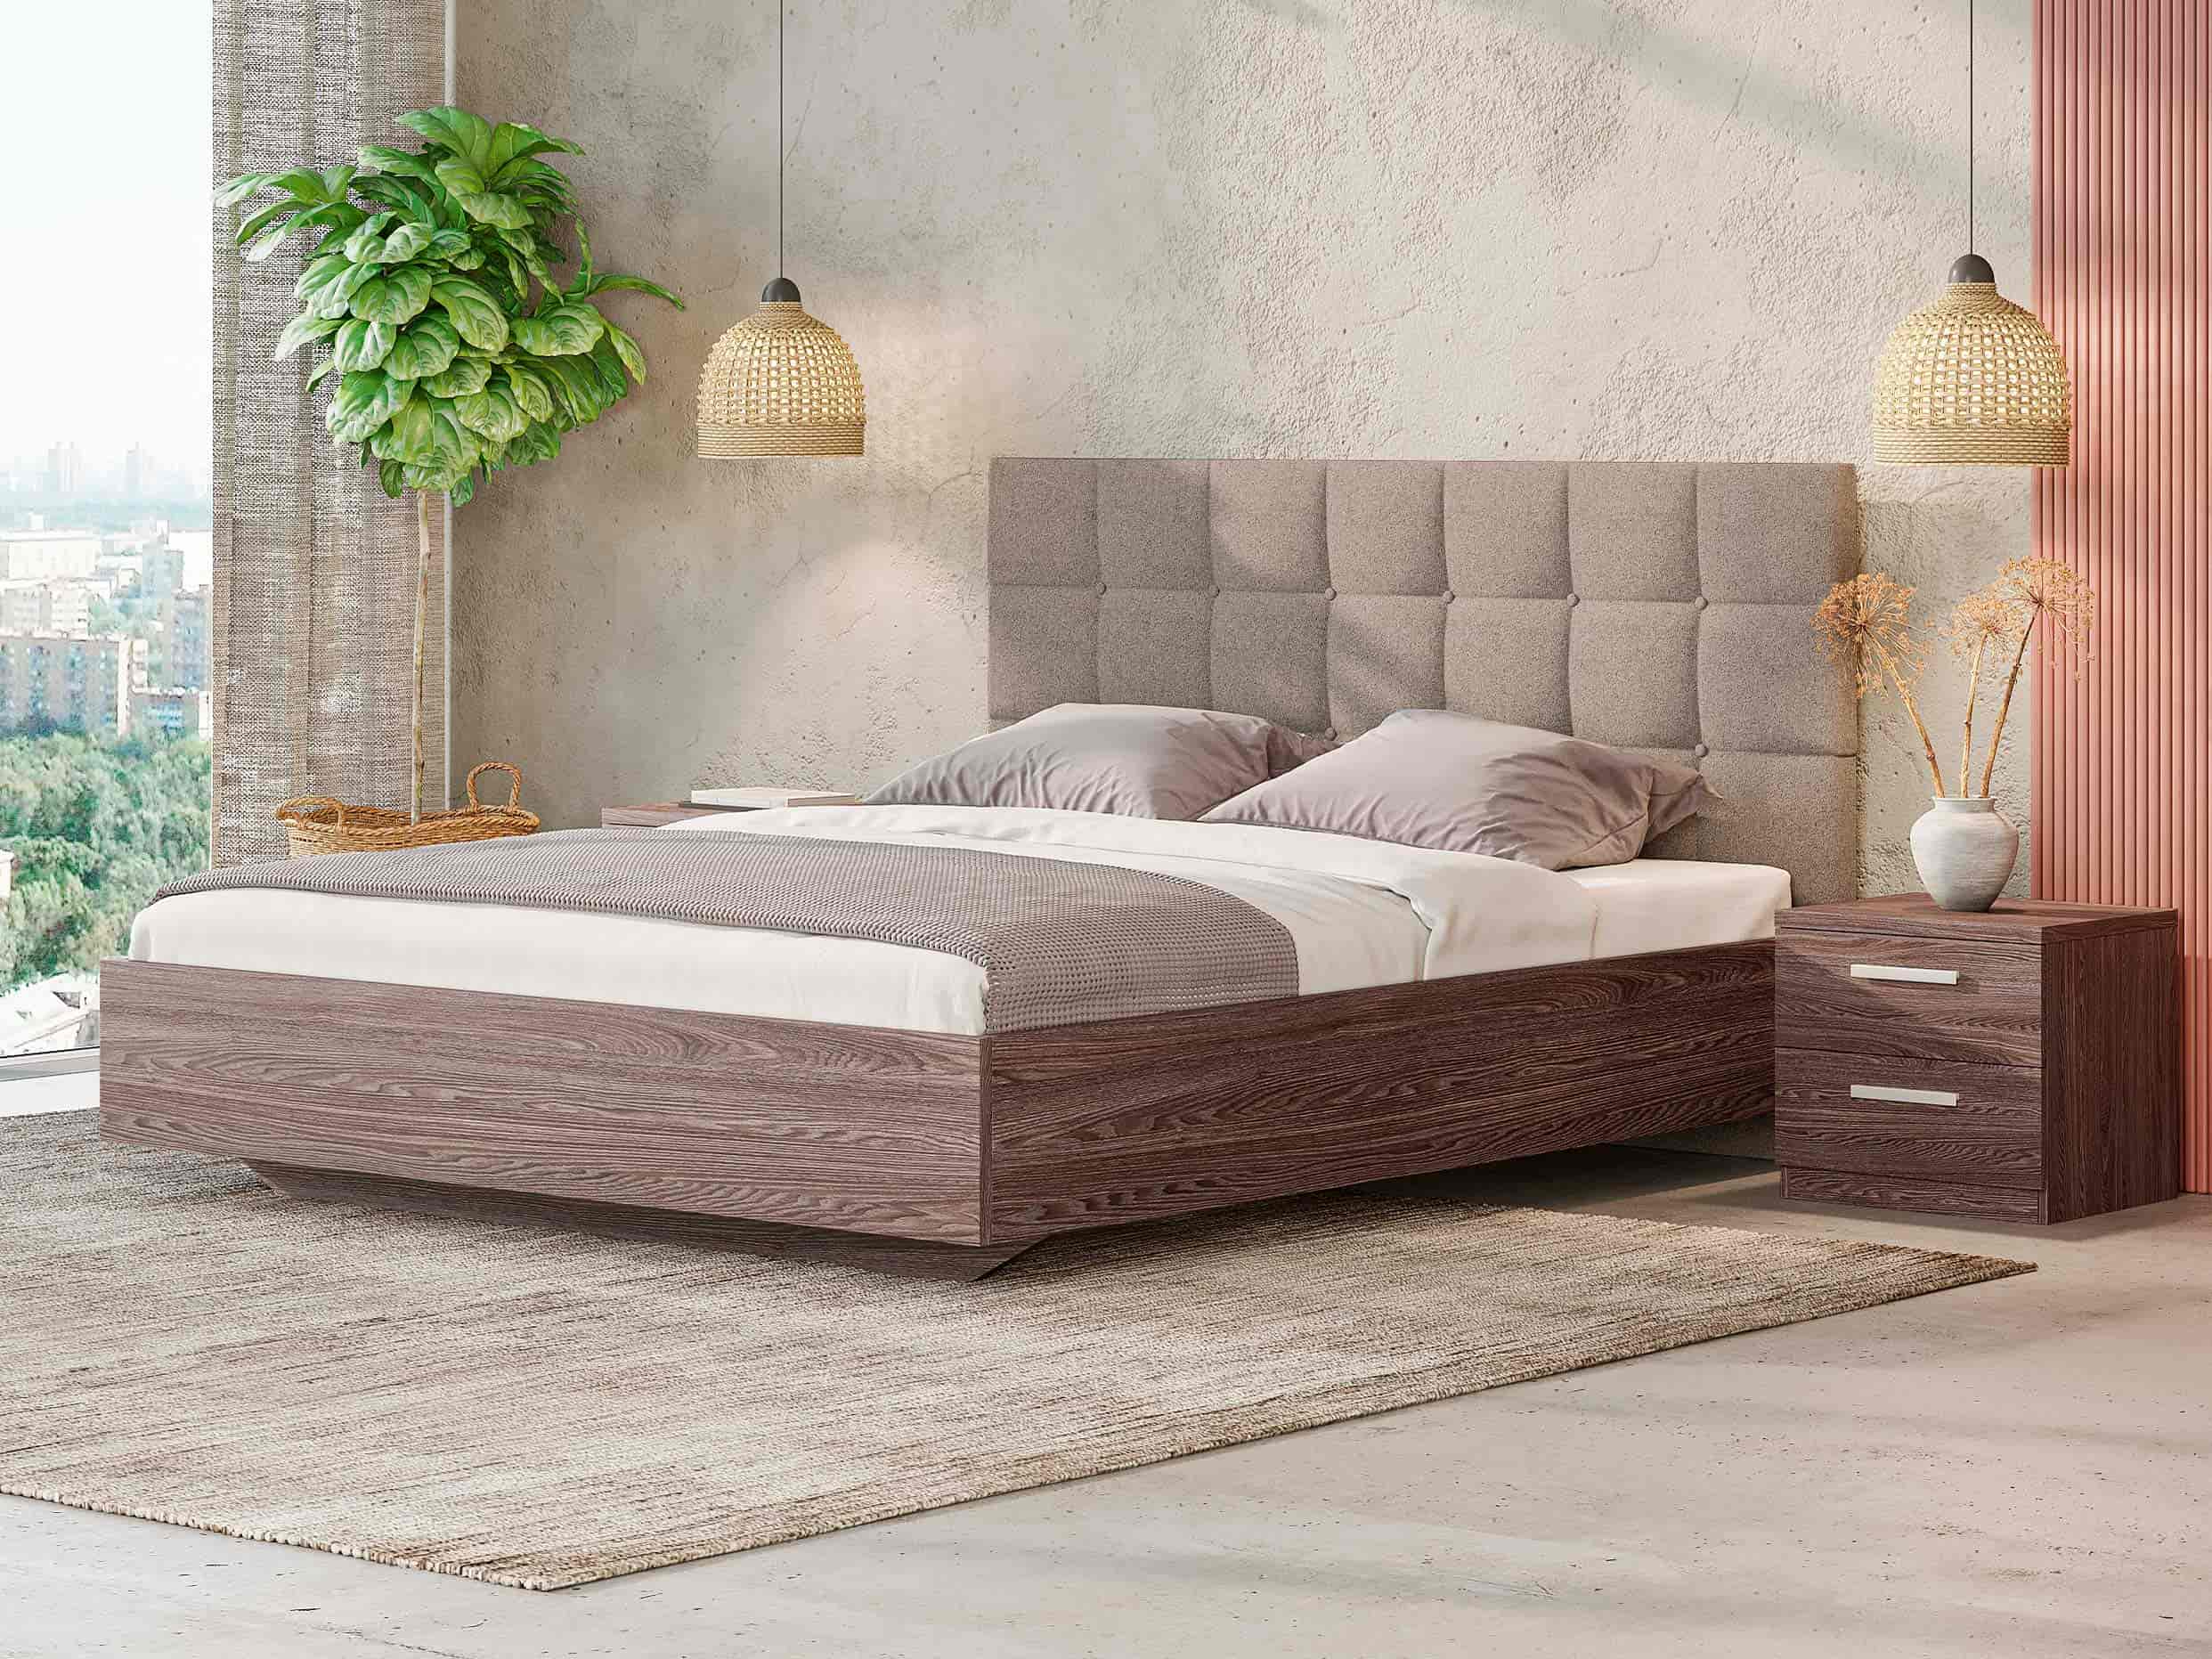 Комбинированные кровати для спальни с объемным изголовьем и деревянной основой